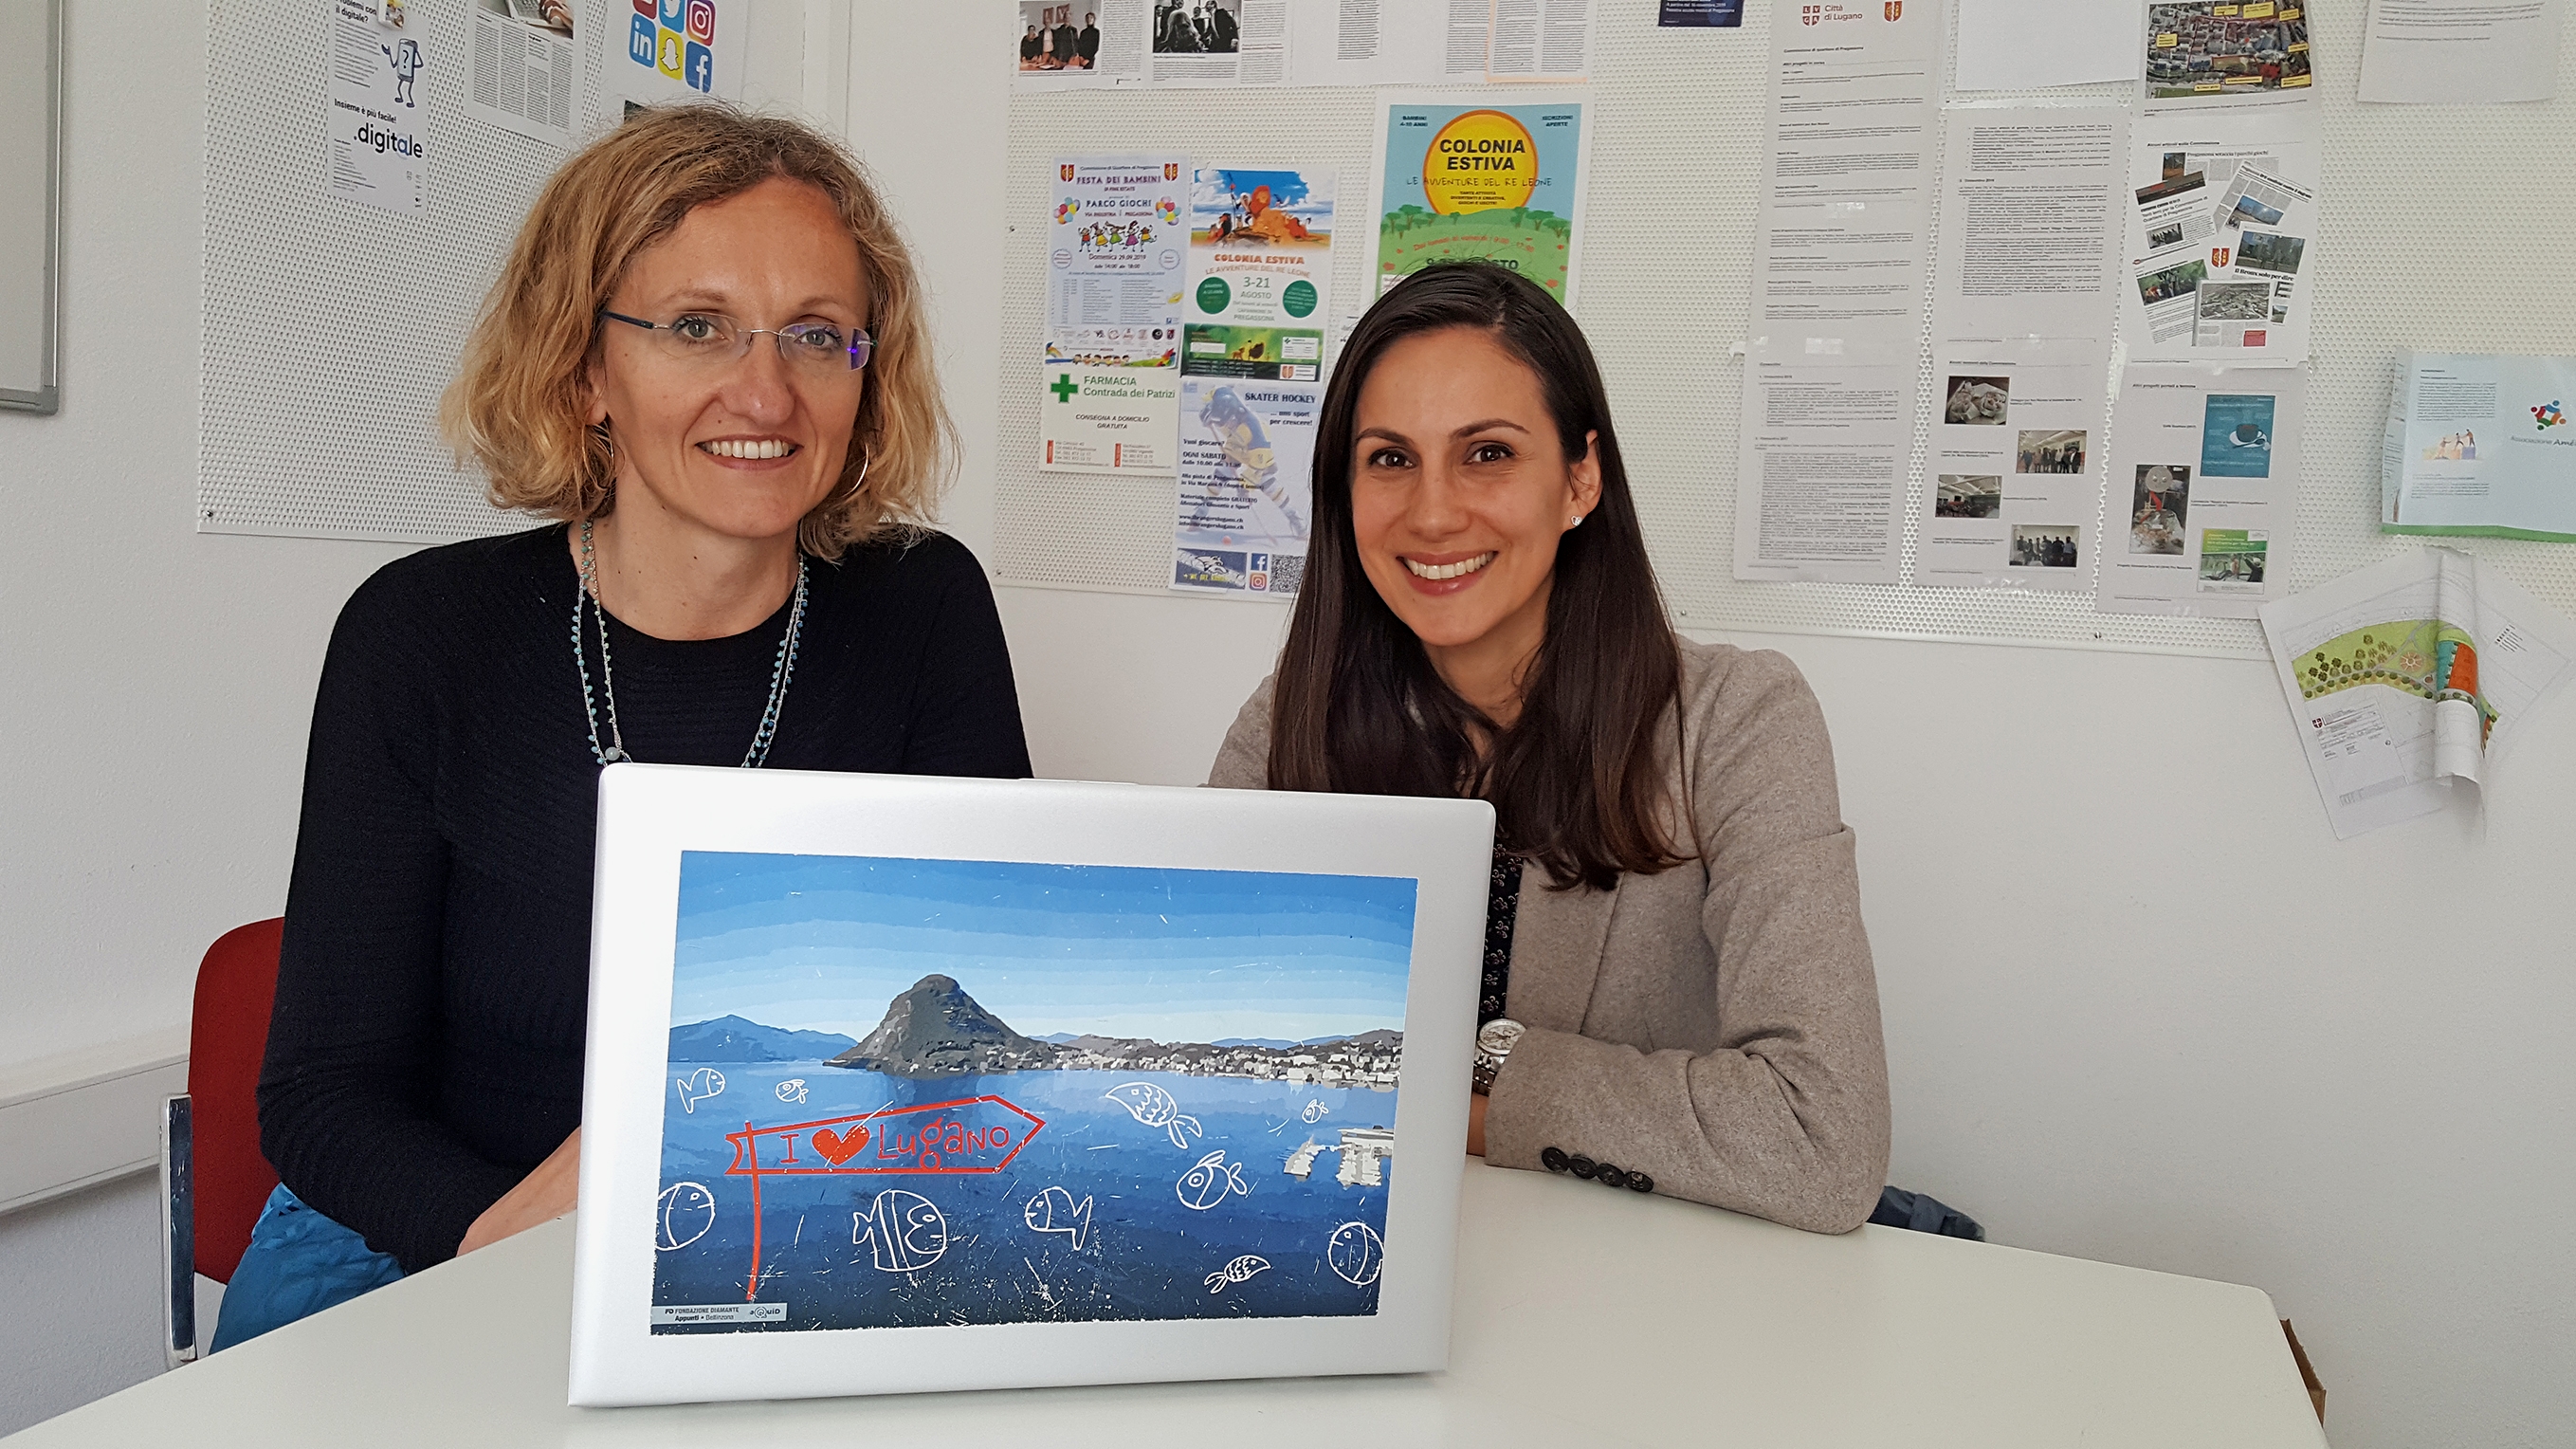 Monica Aliprandi, responsabile del progetto eQuiD presso i servizi della Divisione Socialità della Città di Lugano (a sinistra), ed Elena Marchiori di Lugano Living Lab davanti a un computer portatile in stile eQuiD.